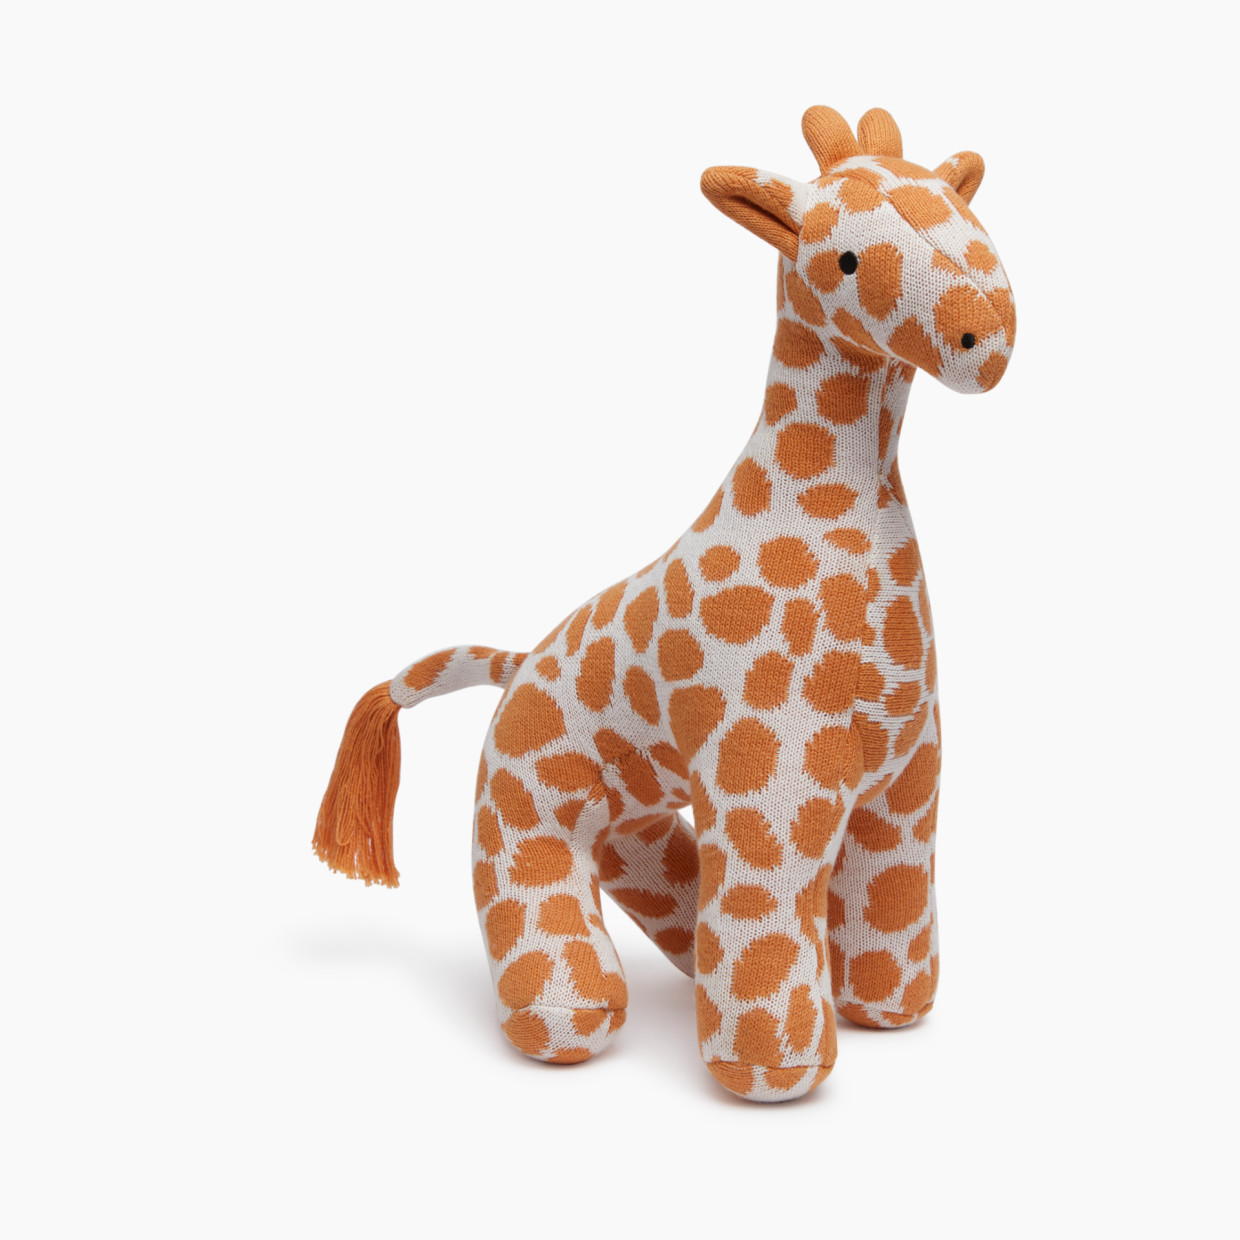 Loomsake Stuffed Animal - Giraffe.